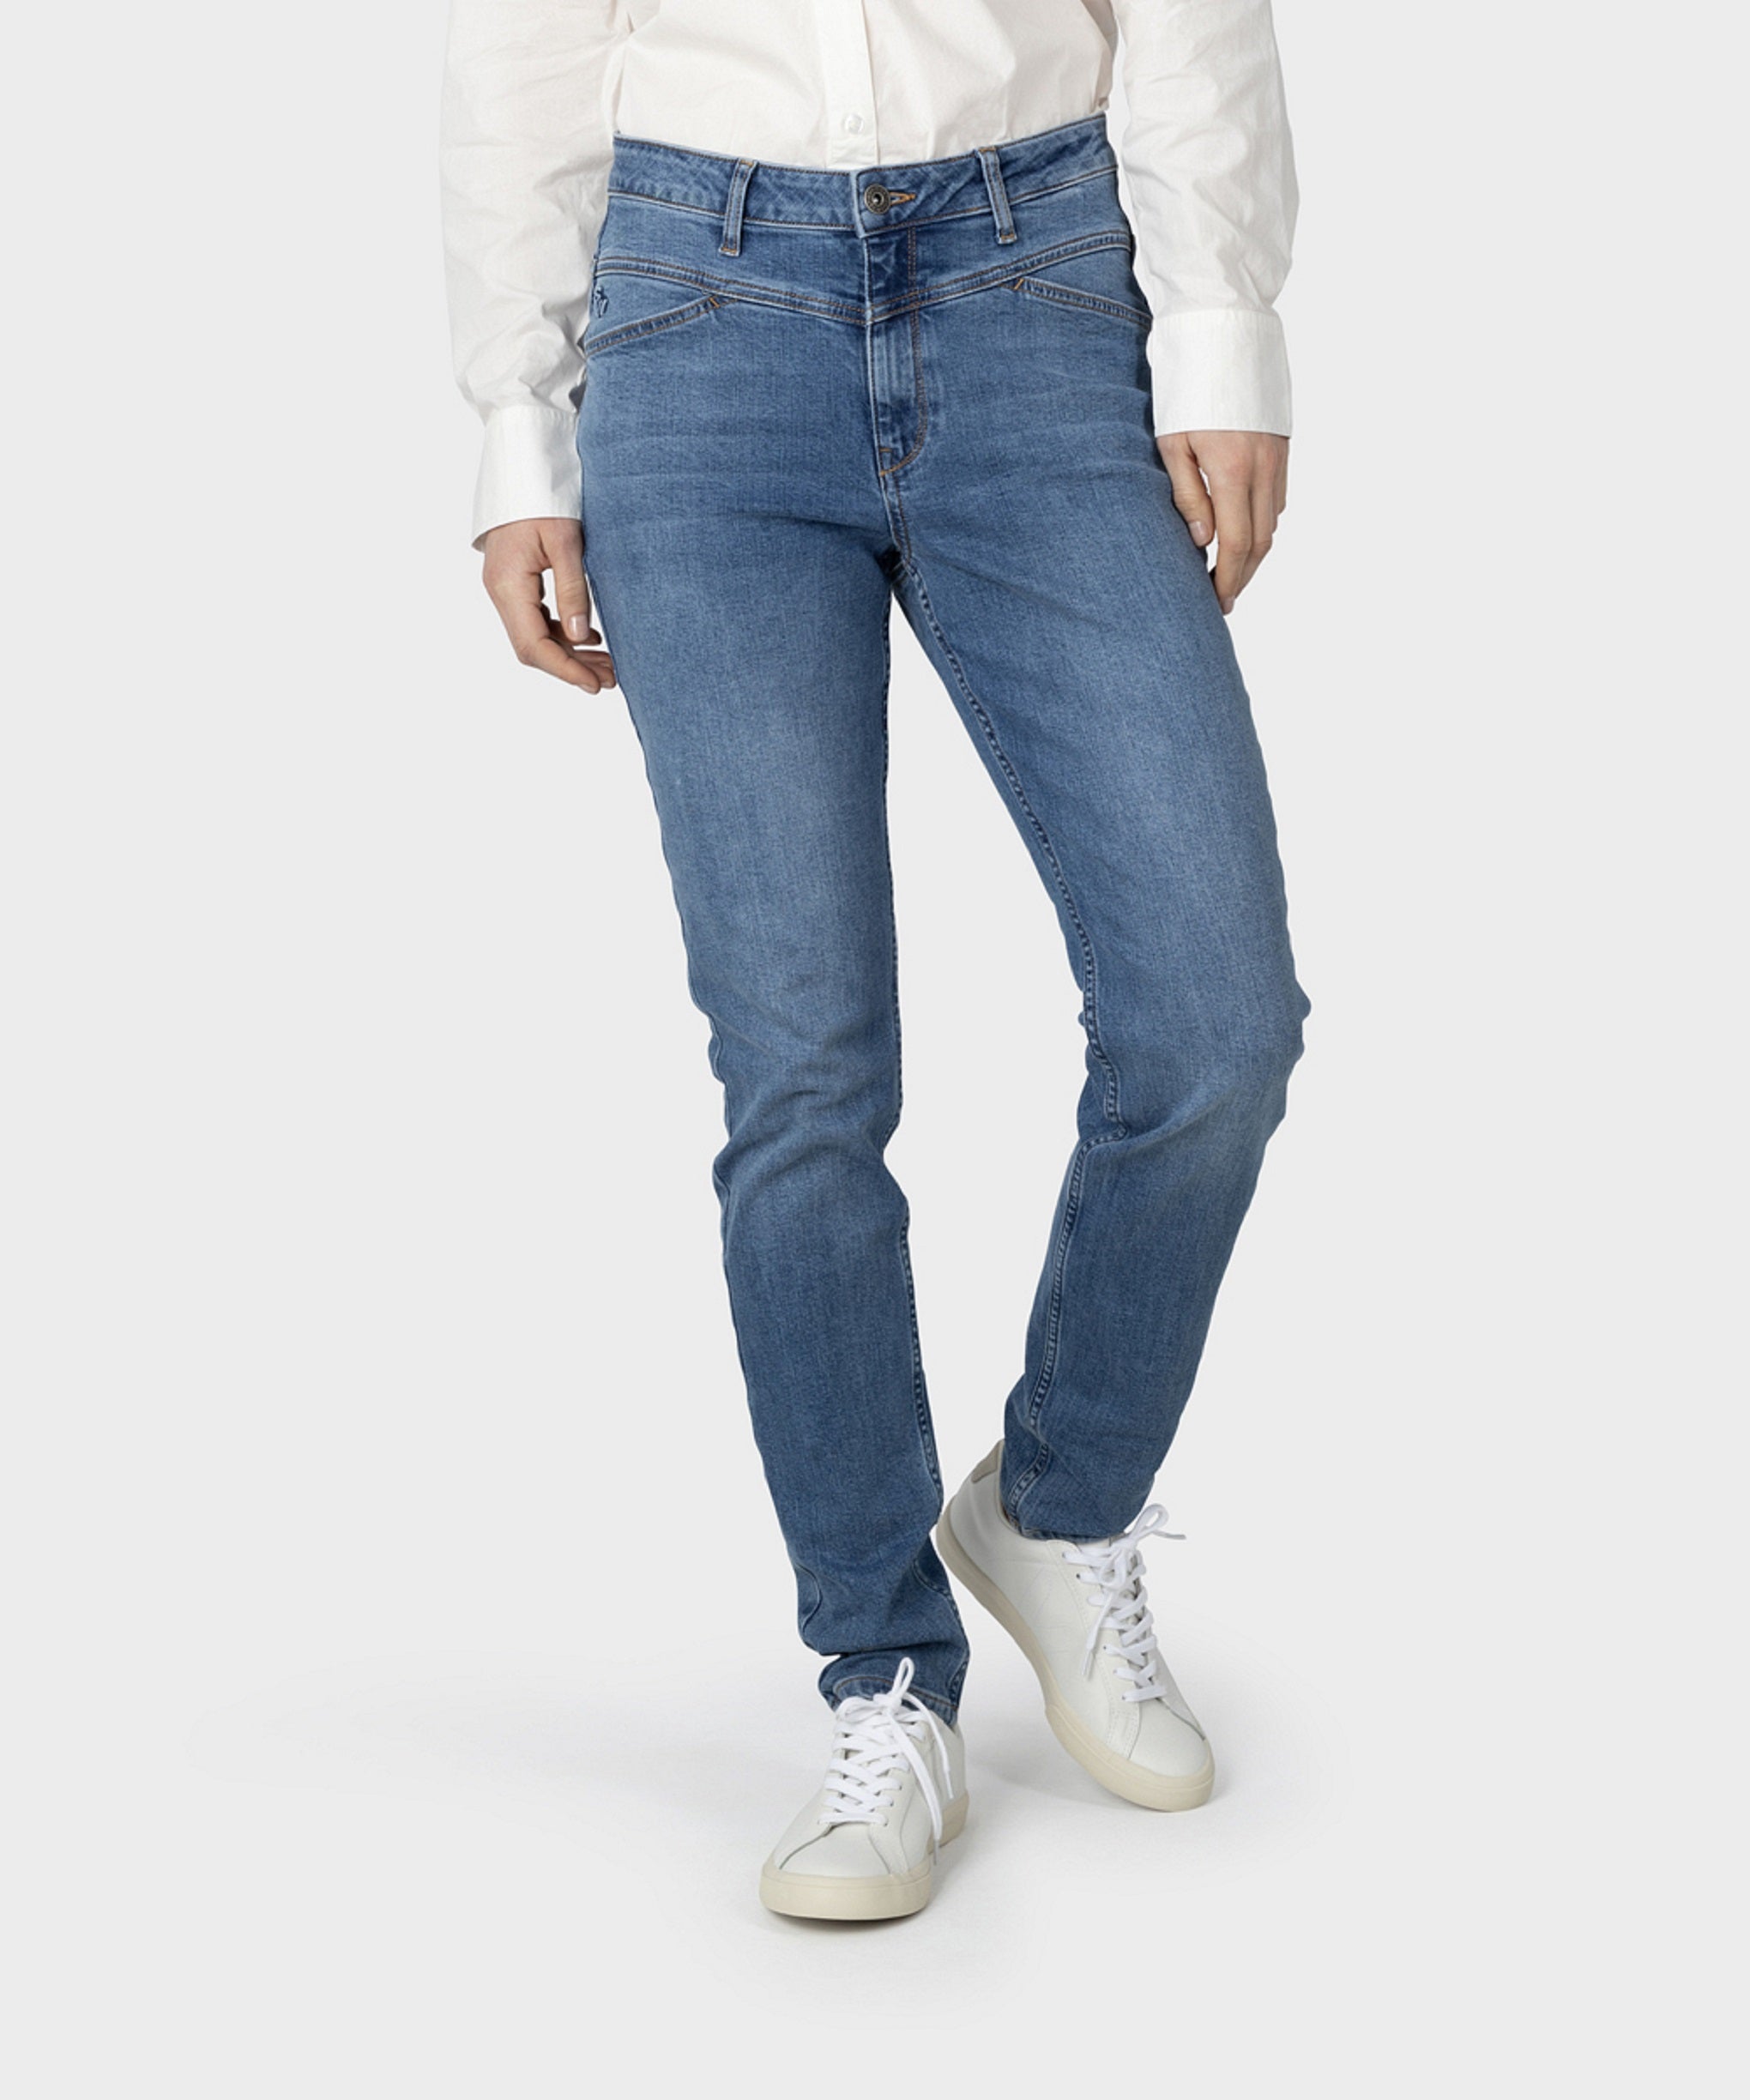 Pantalon en jean - Denim bleu clair